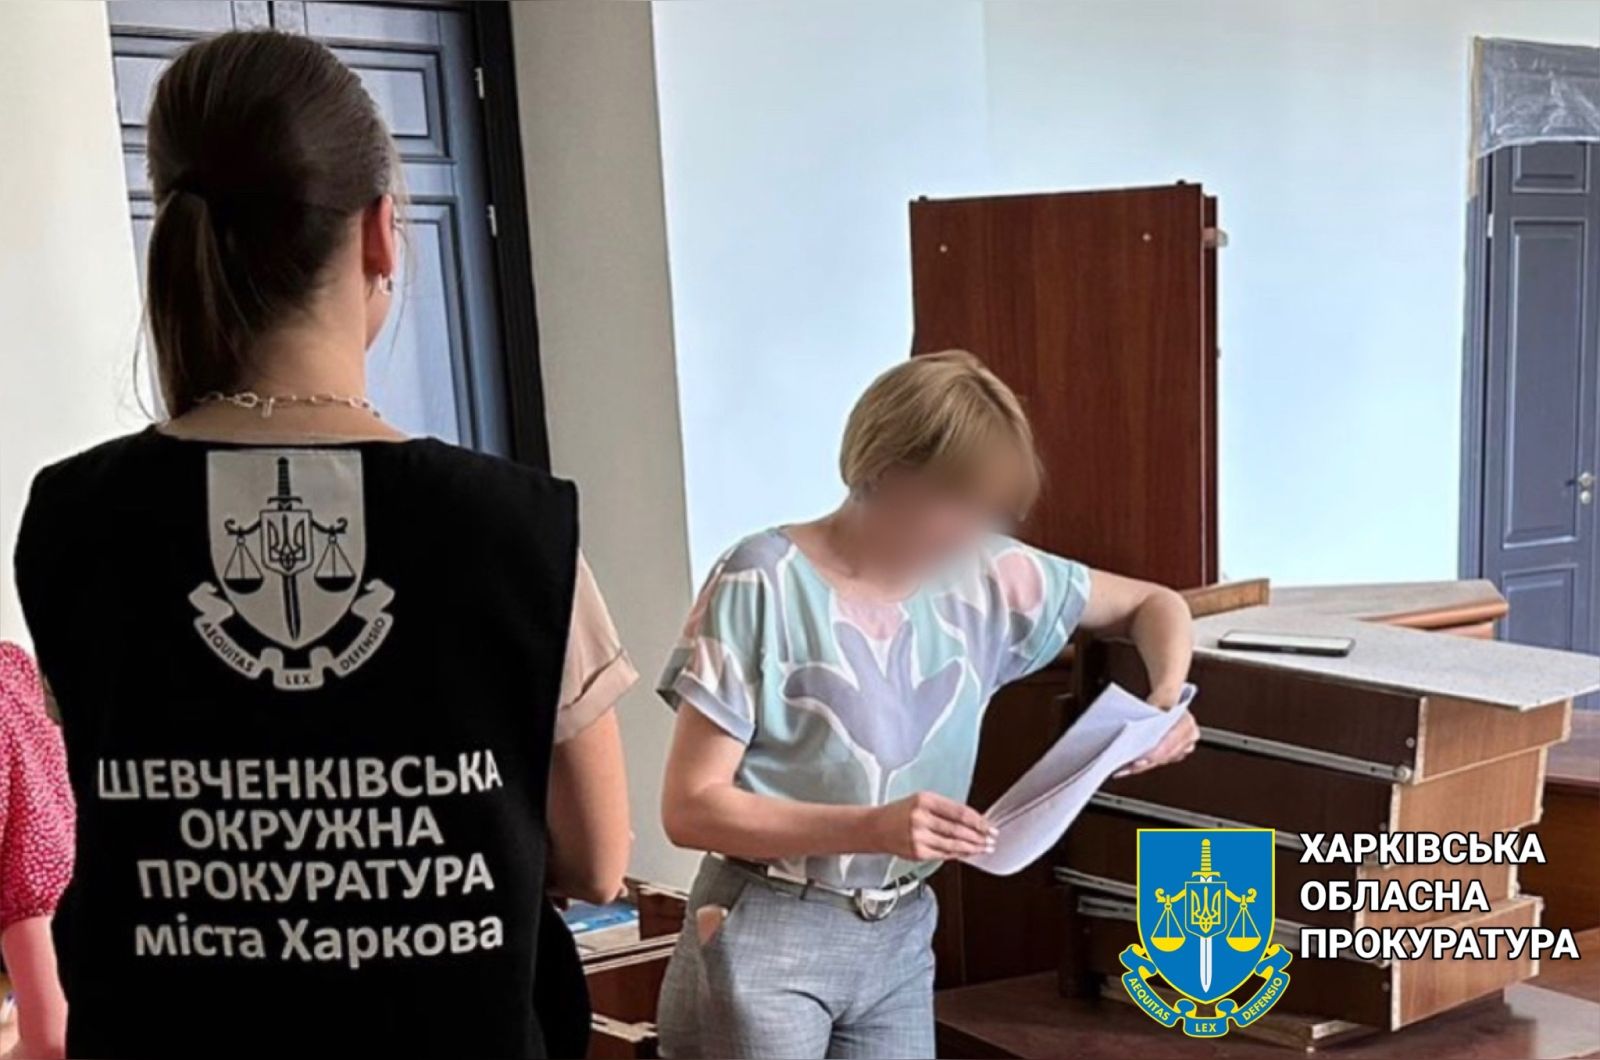 Чиновниця Харківської обладміністрації розтратила бюджетні гроші